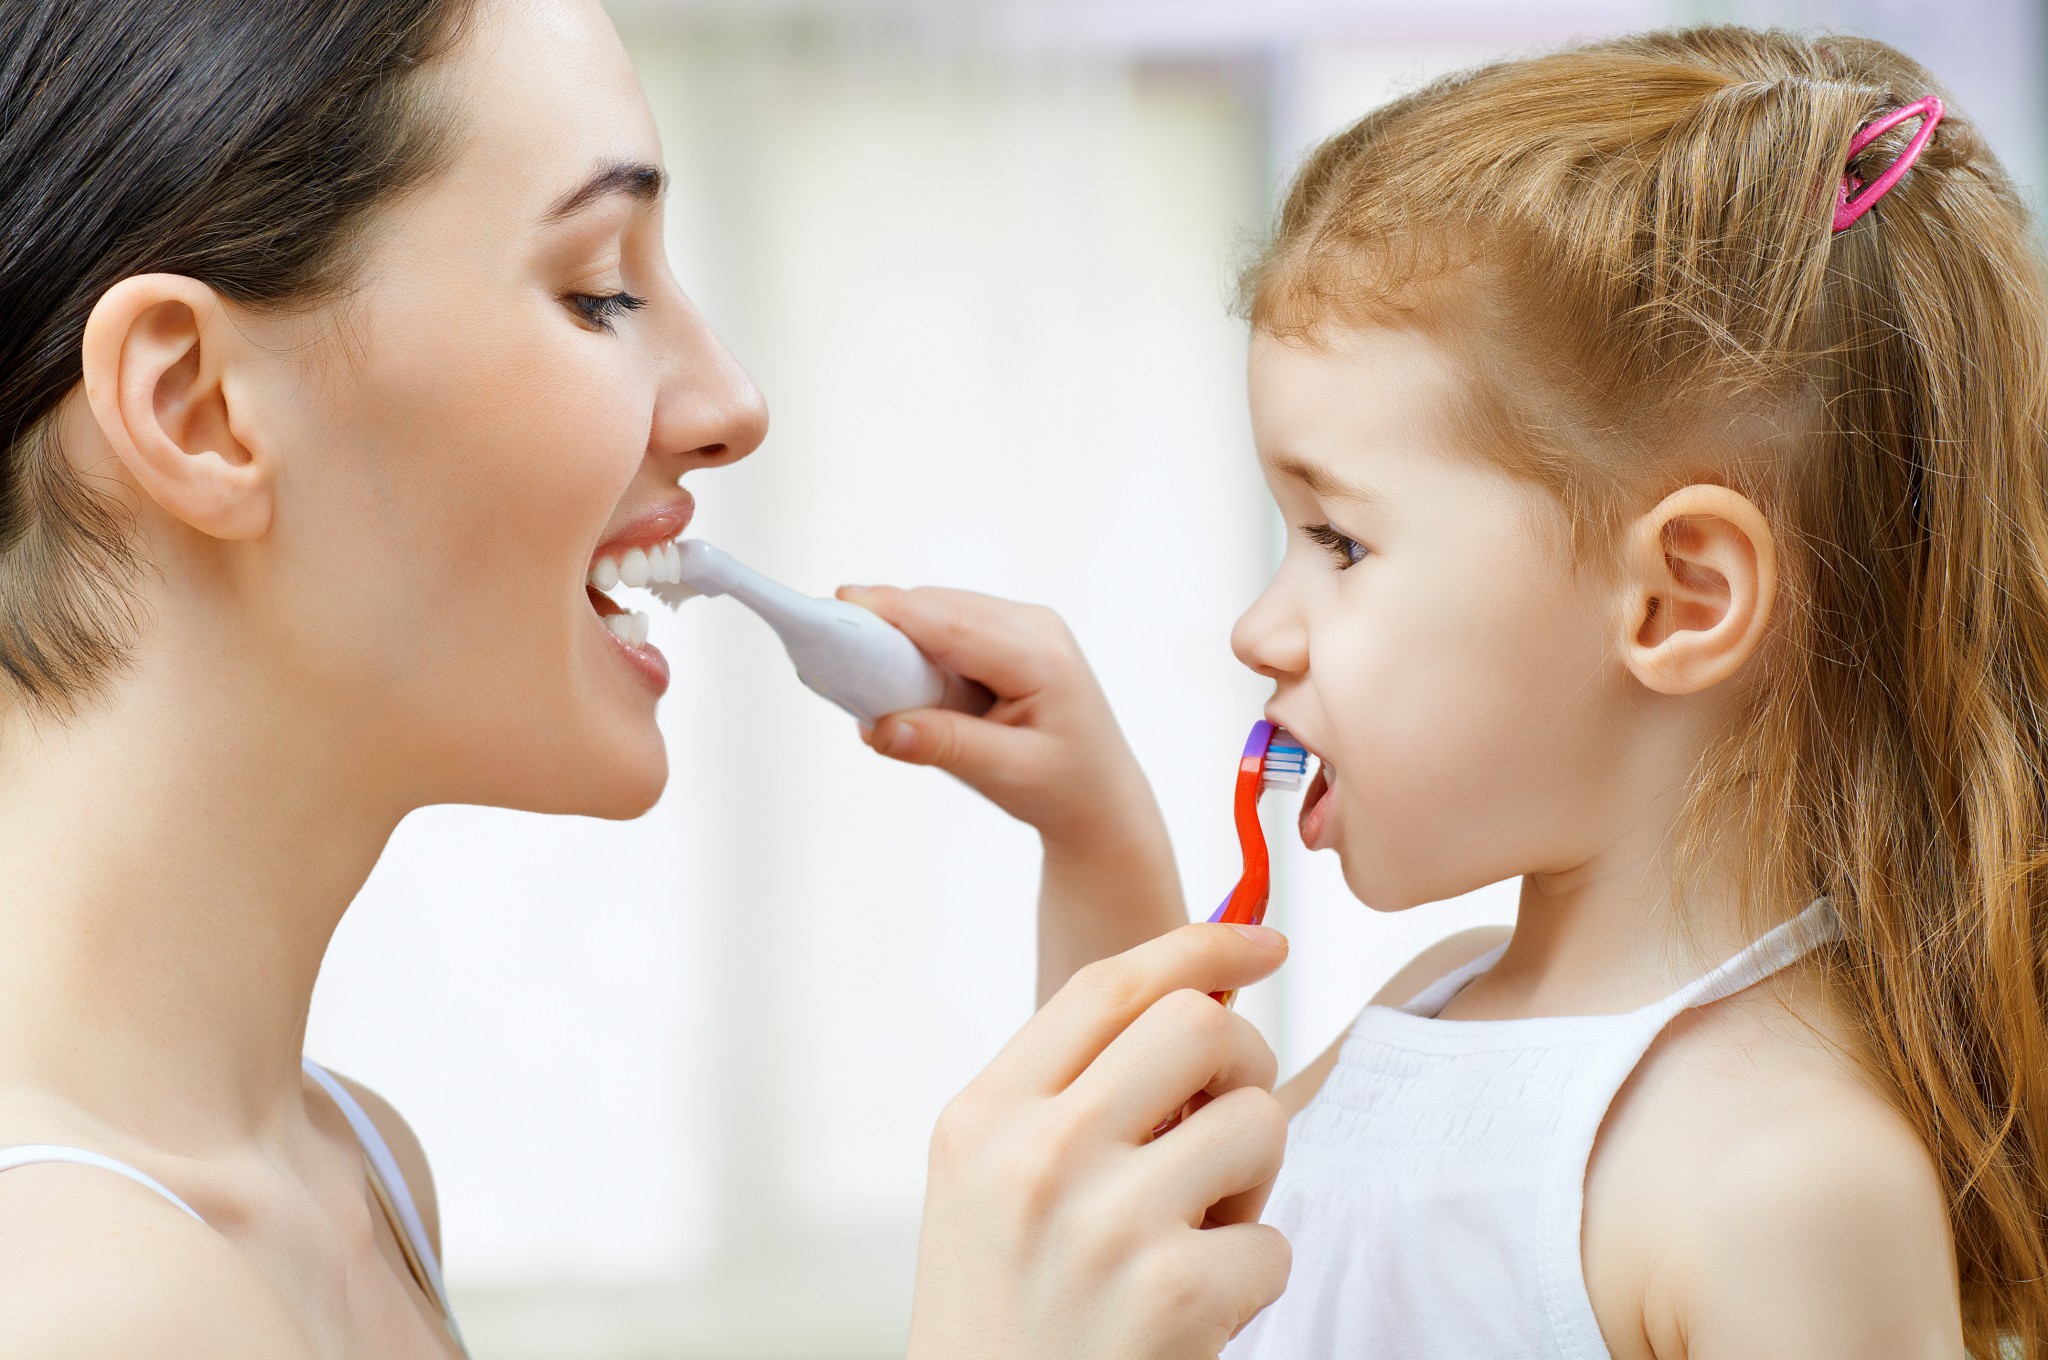 Разбираемся в ассортименте зубных щеток для детей силиконовые, ультразвуковые, с таймером и многие другие